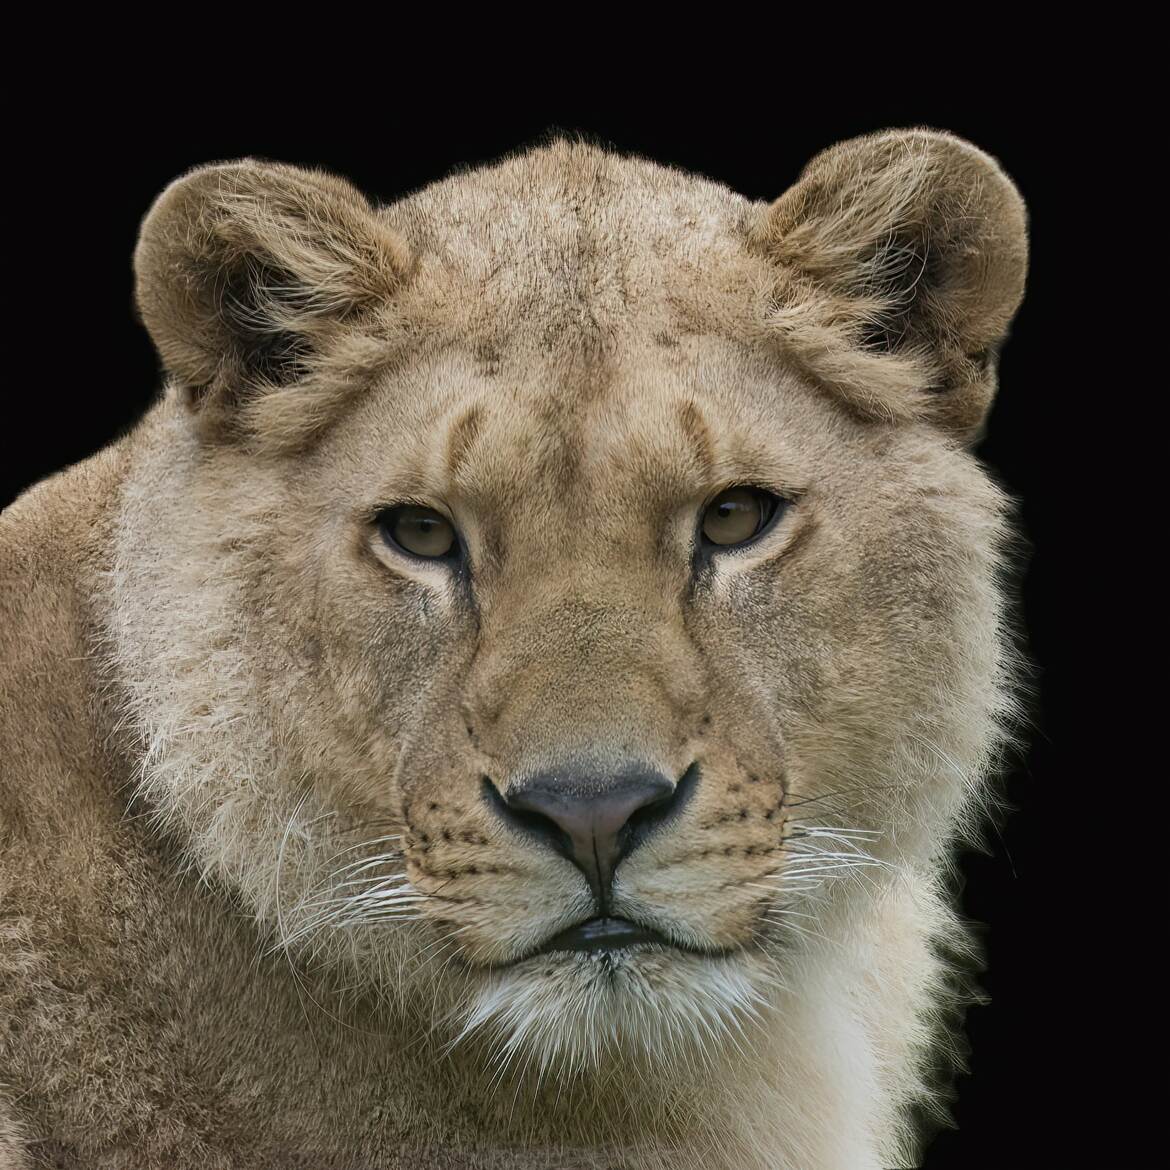 Portrait de jeune lion